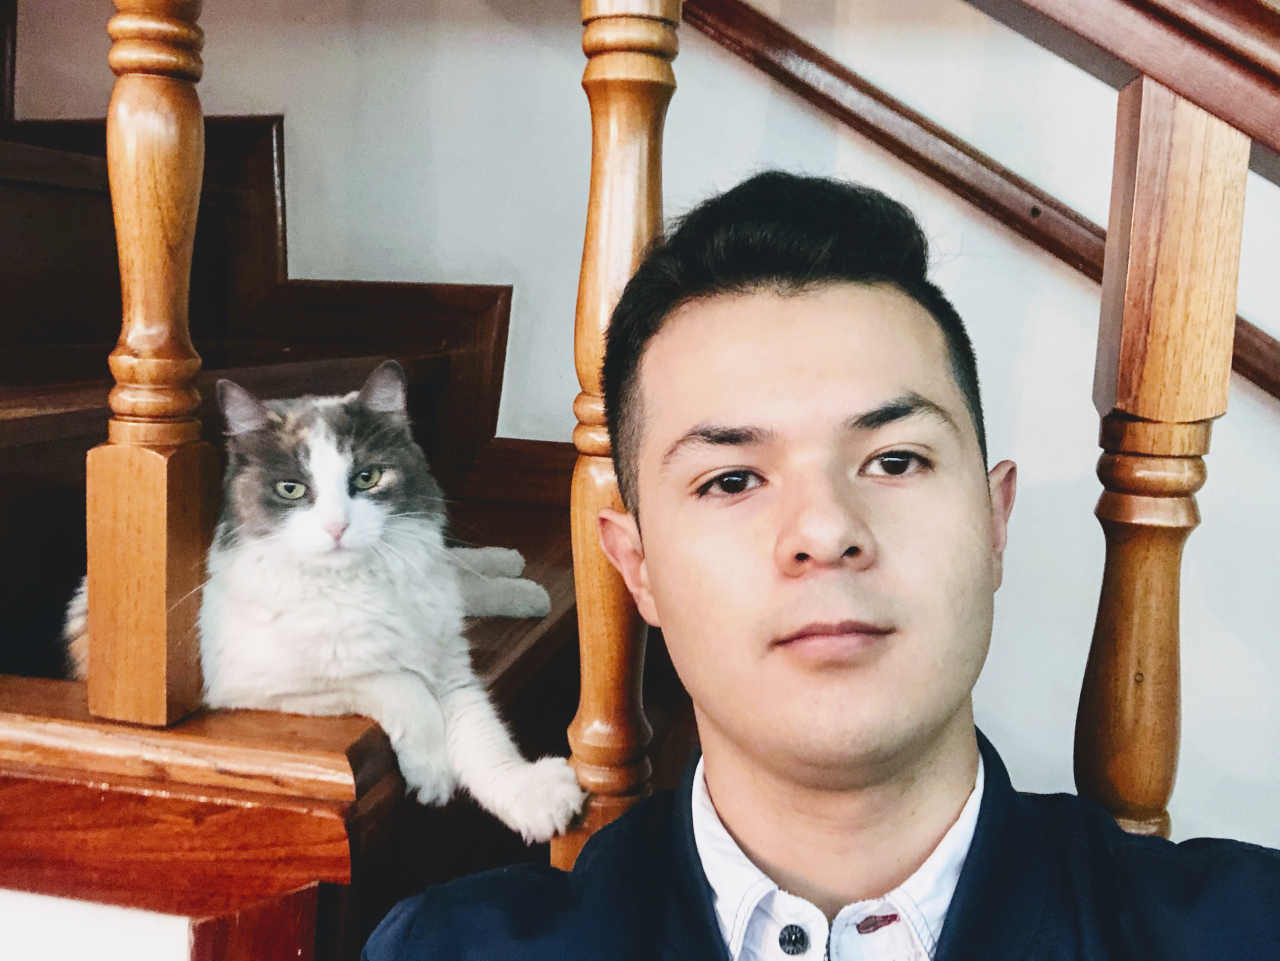 Junior developer and his cat